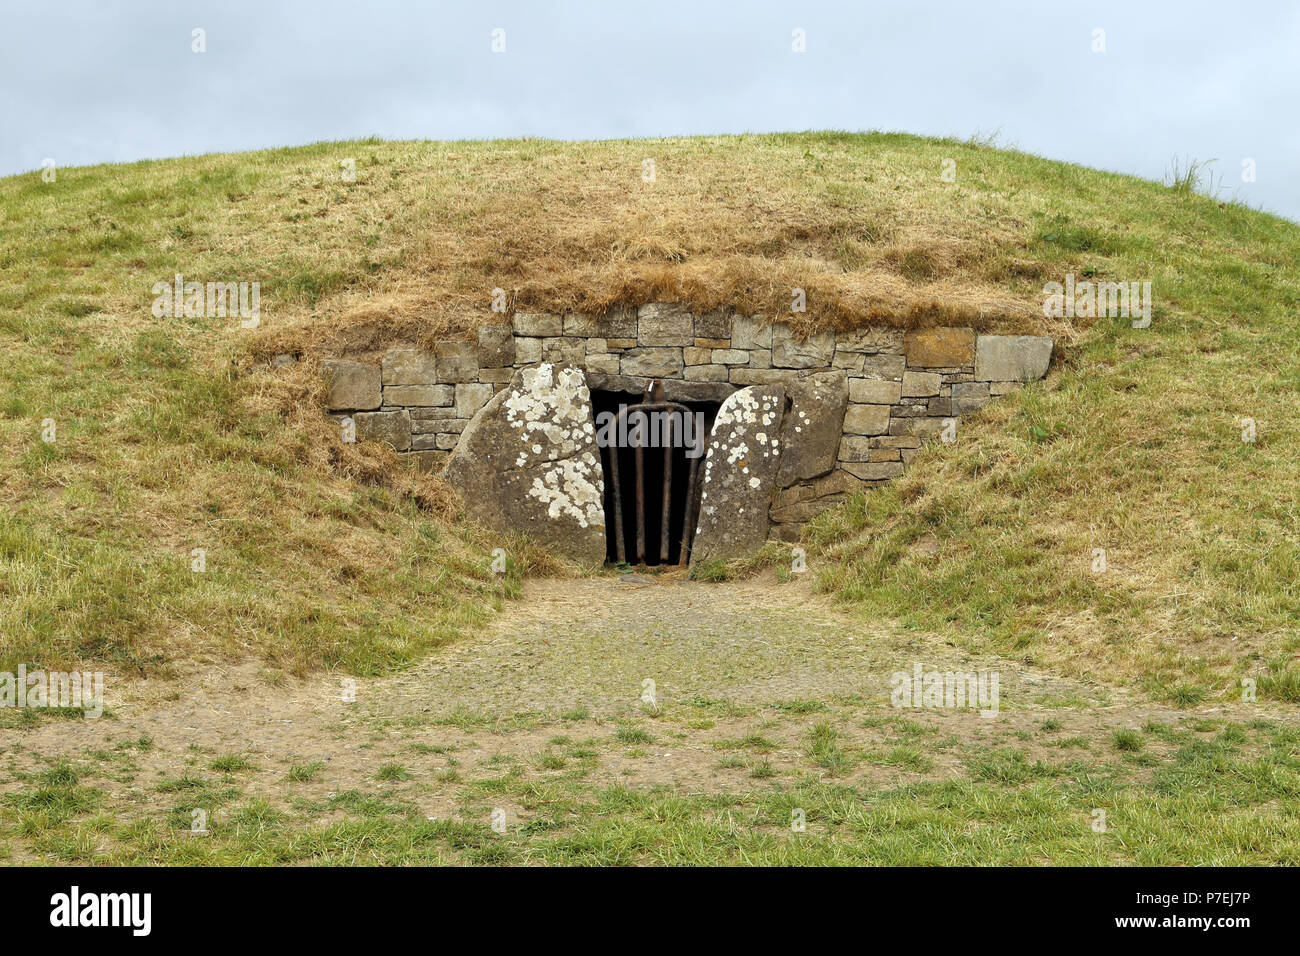 La Collina di Tara, situato nei pressi del fiume Boyne, è un complesso archeologico che corre tra Navan e Dunshaughlin nella contea di Meath, Irlanda. Esso condizionata Foto Stock